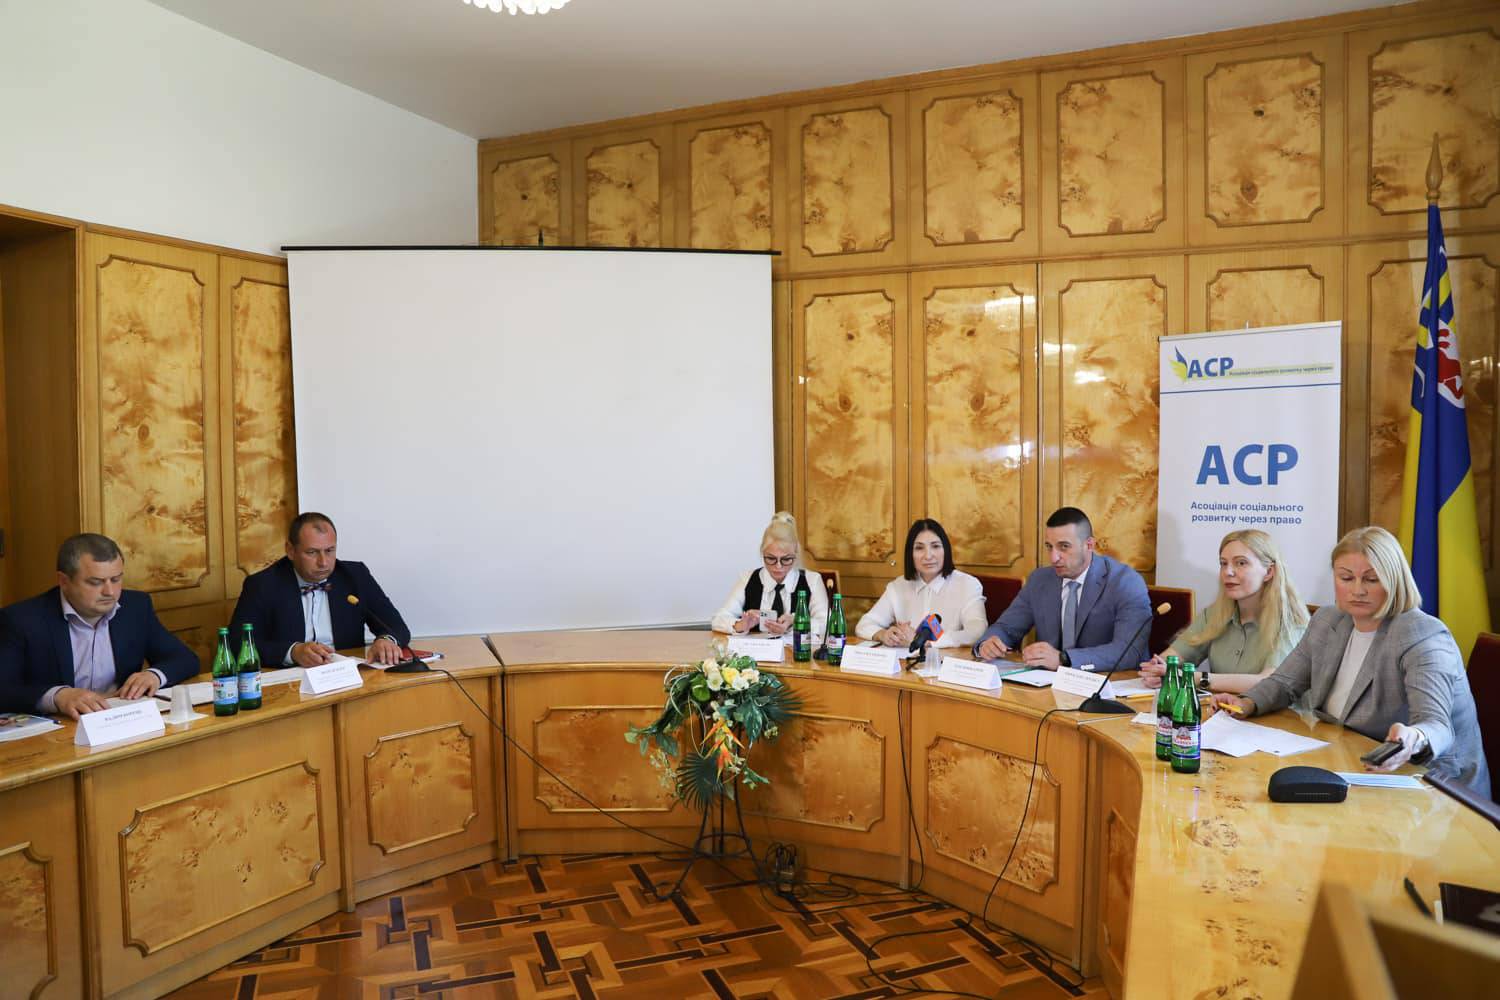 Сучасні виклики соціального розвитку на Закарпатті обговорювали на круглому столі в Ужгороді